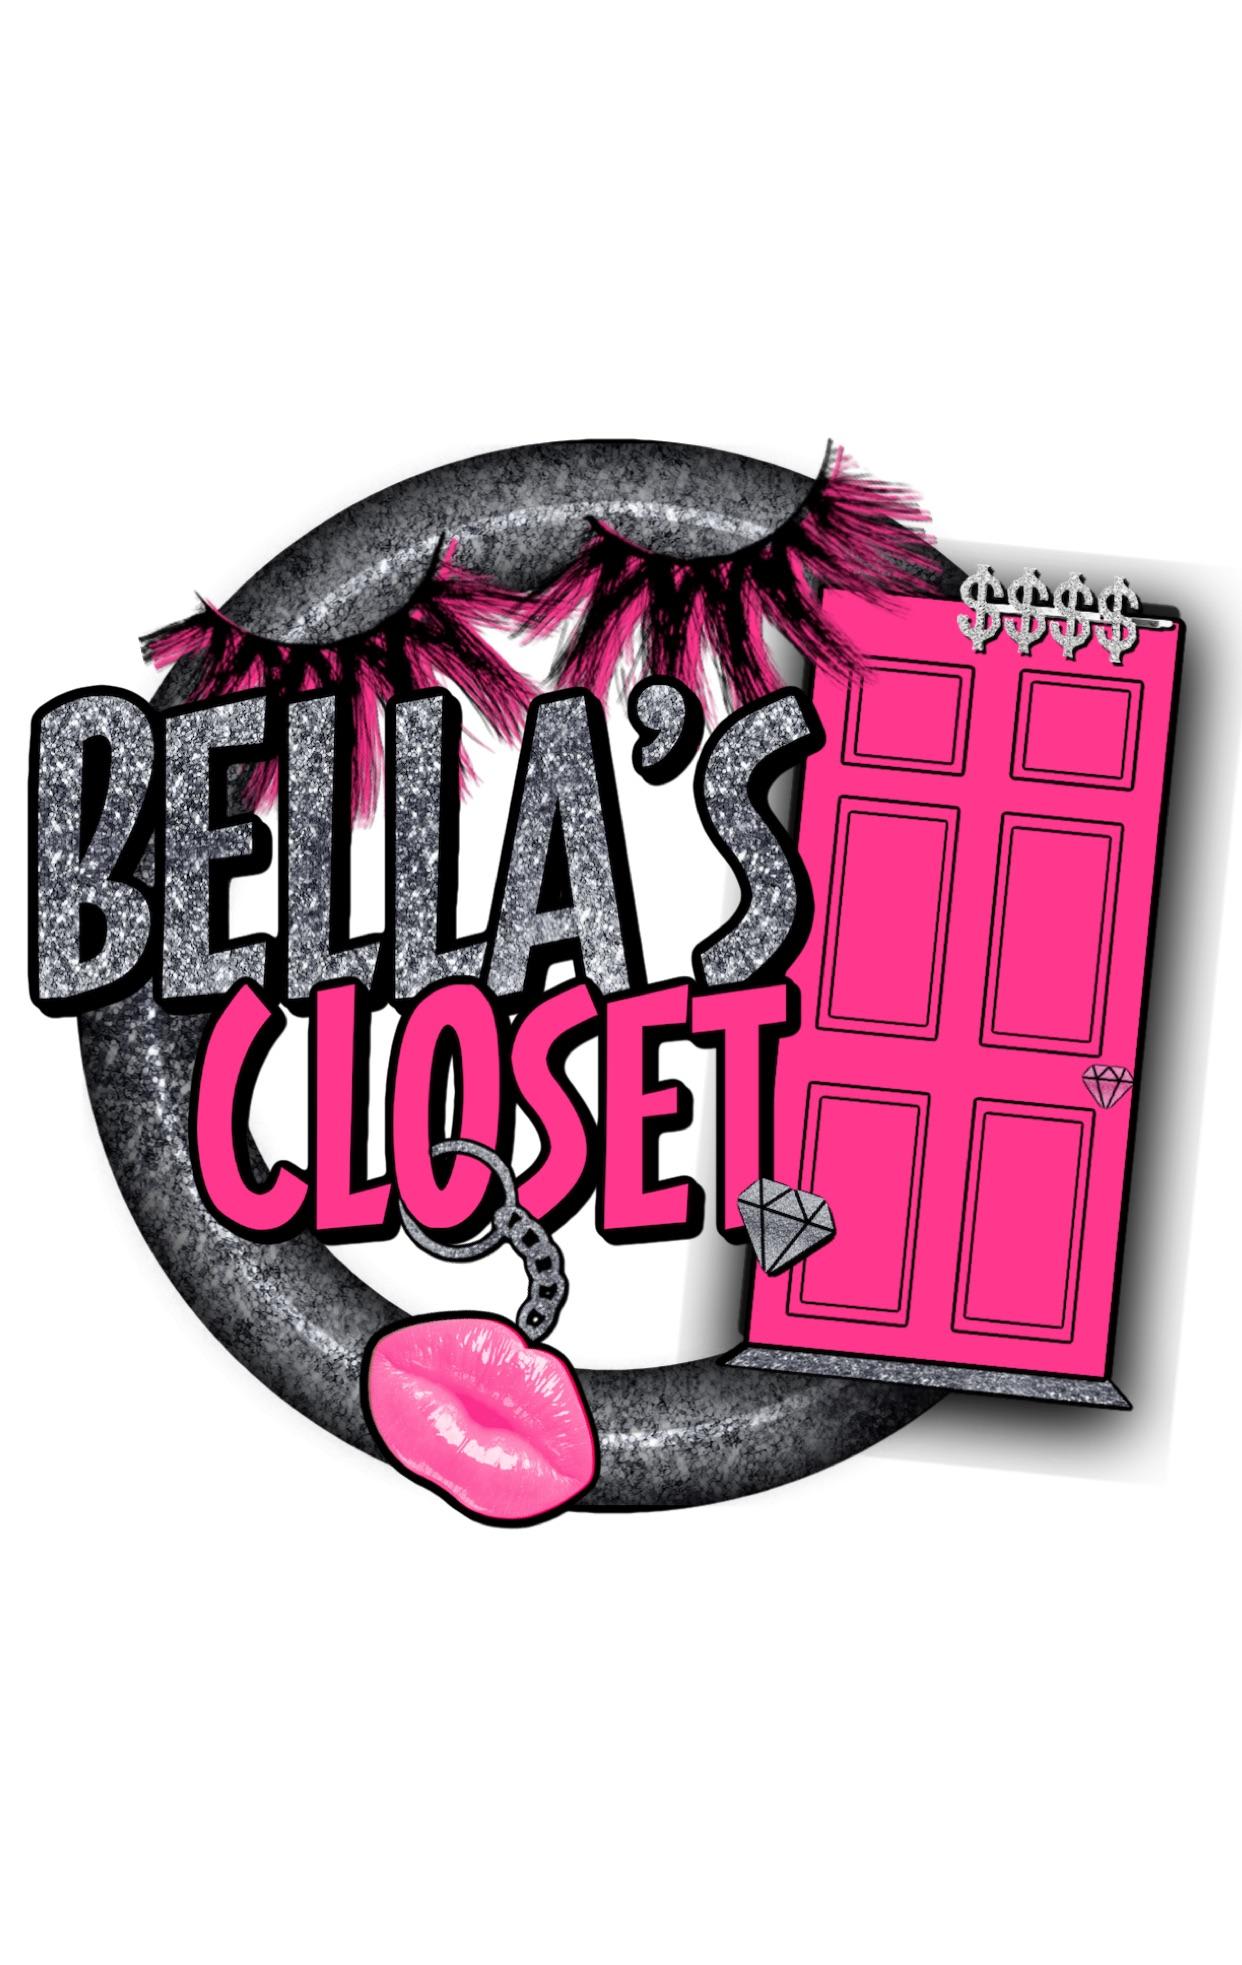 Bella's Closet